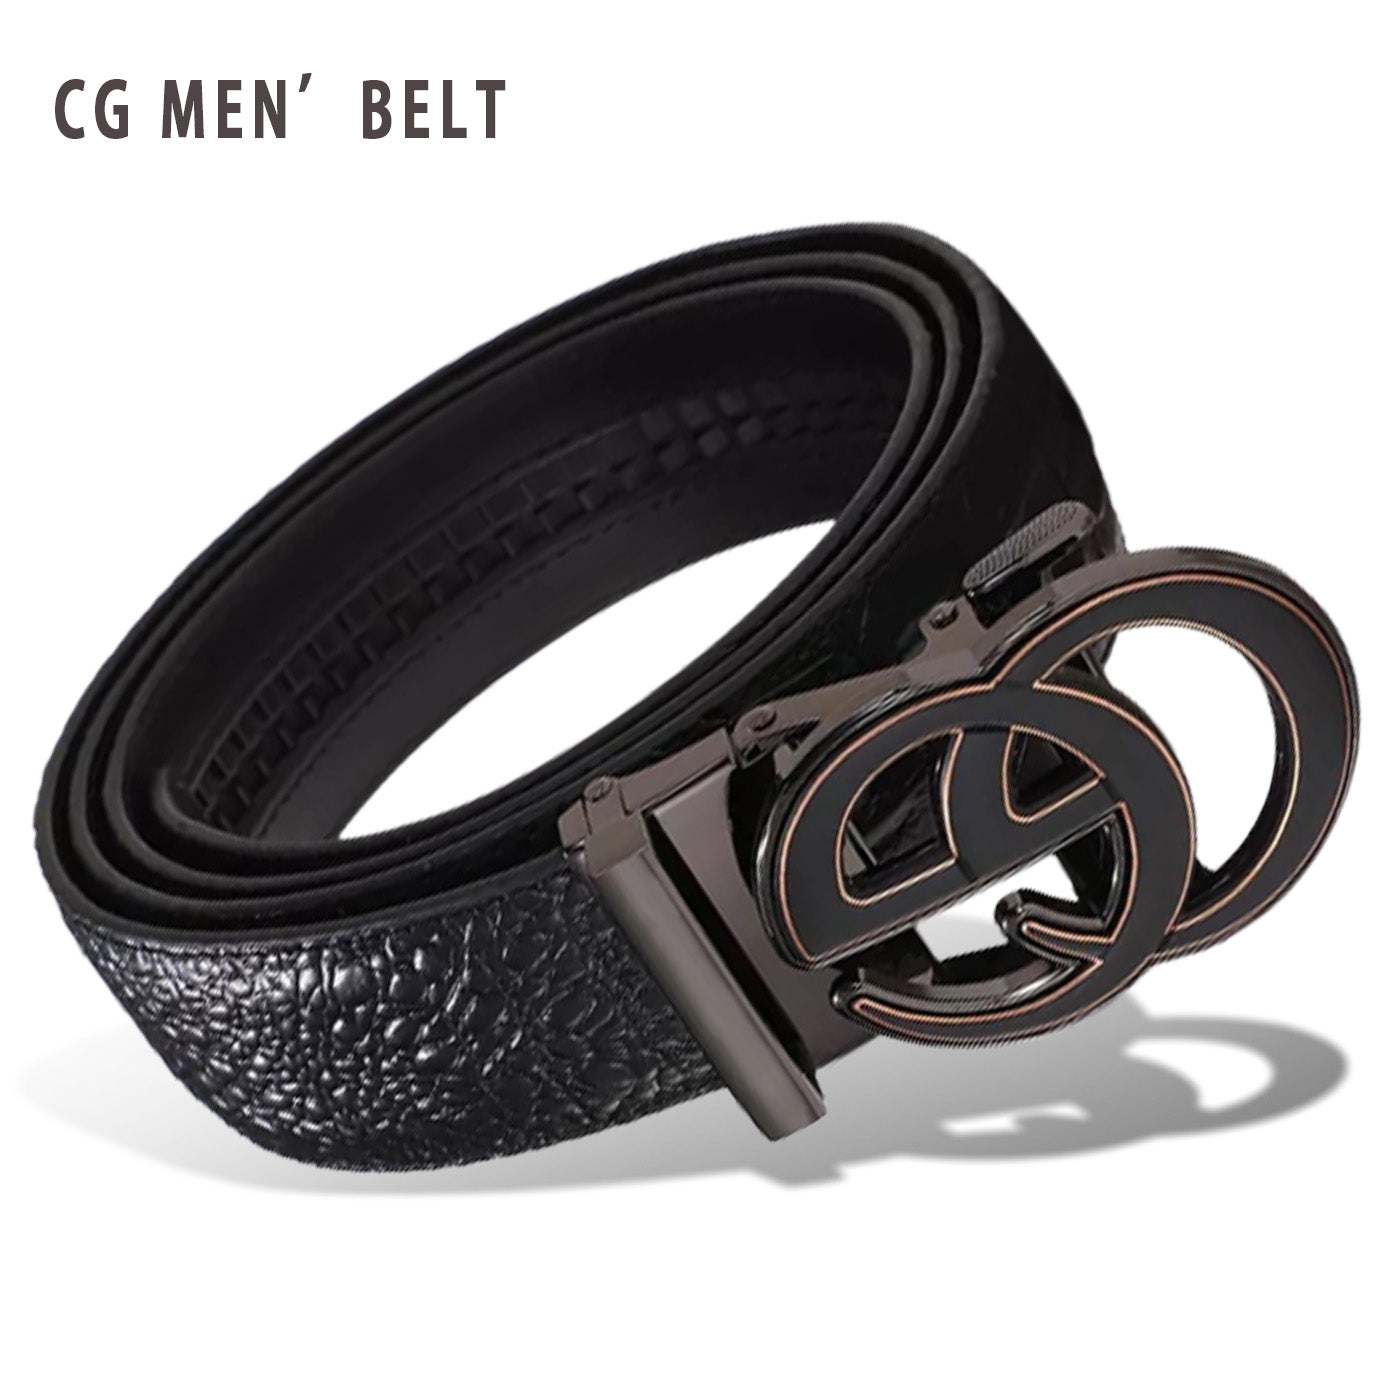 Trending Double G Men’s Belt Metal C2 | CG Men's Belt